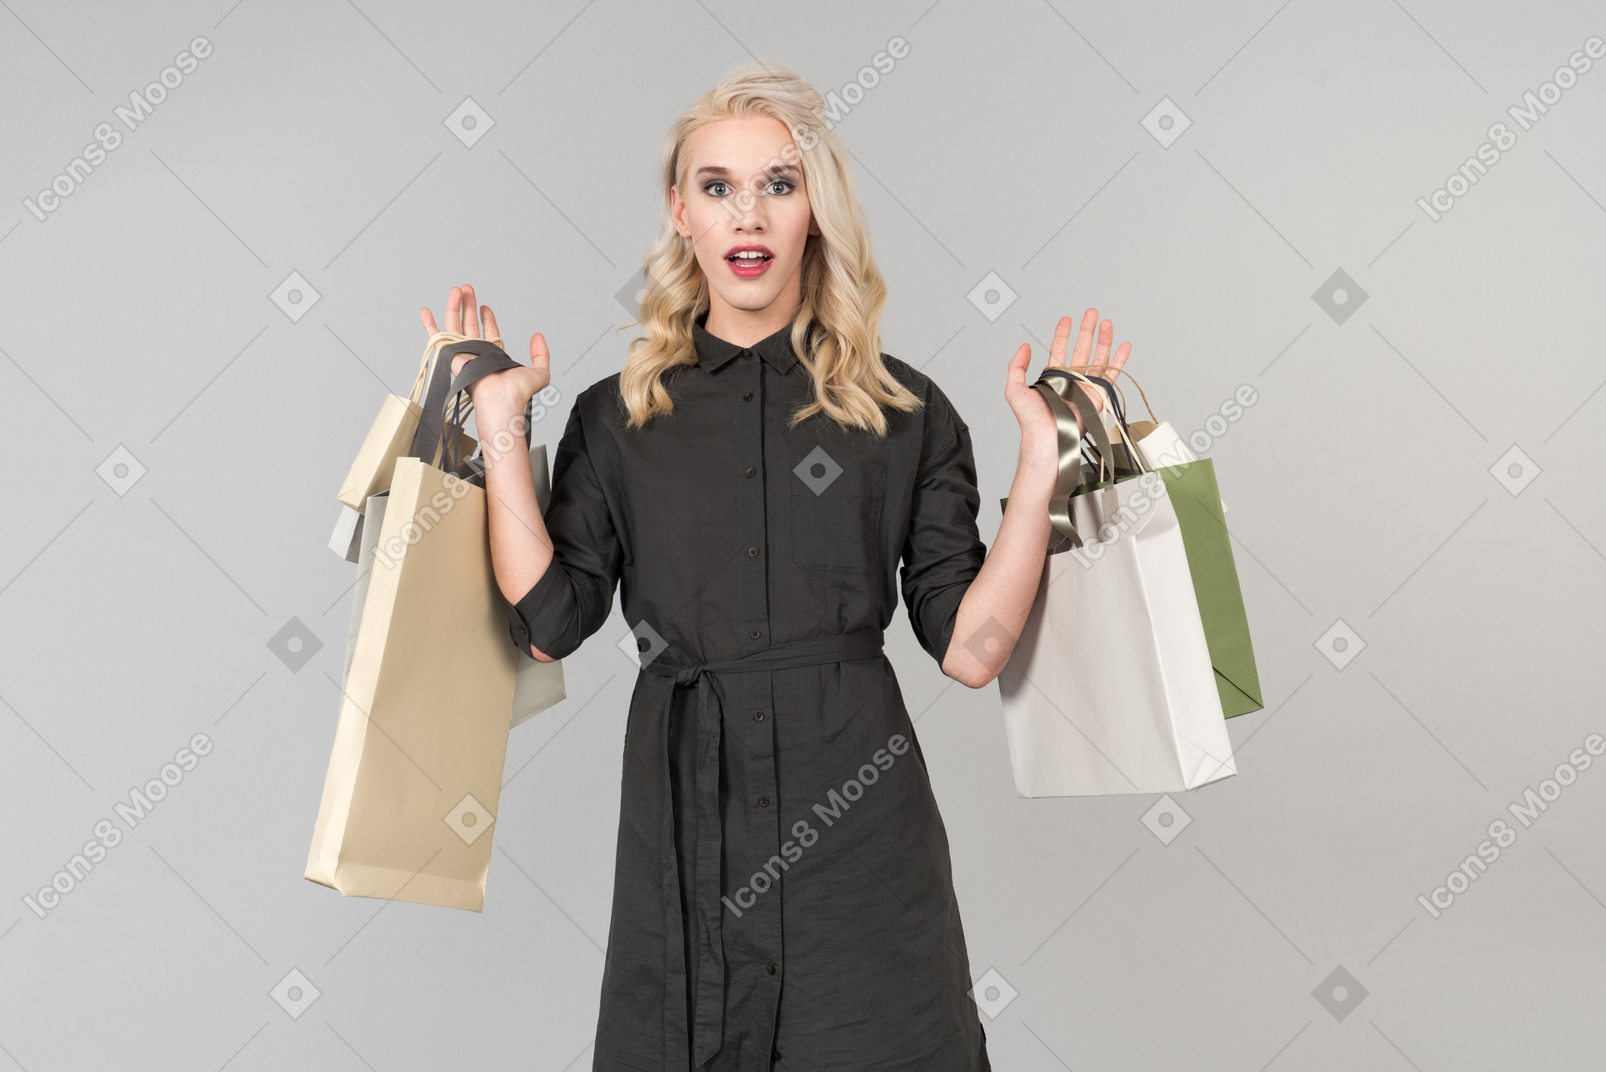 Une belle jeune personne aux cheveux blonds vêtue d'une robe noire tenant un tas de sacs à provisions à la main